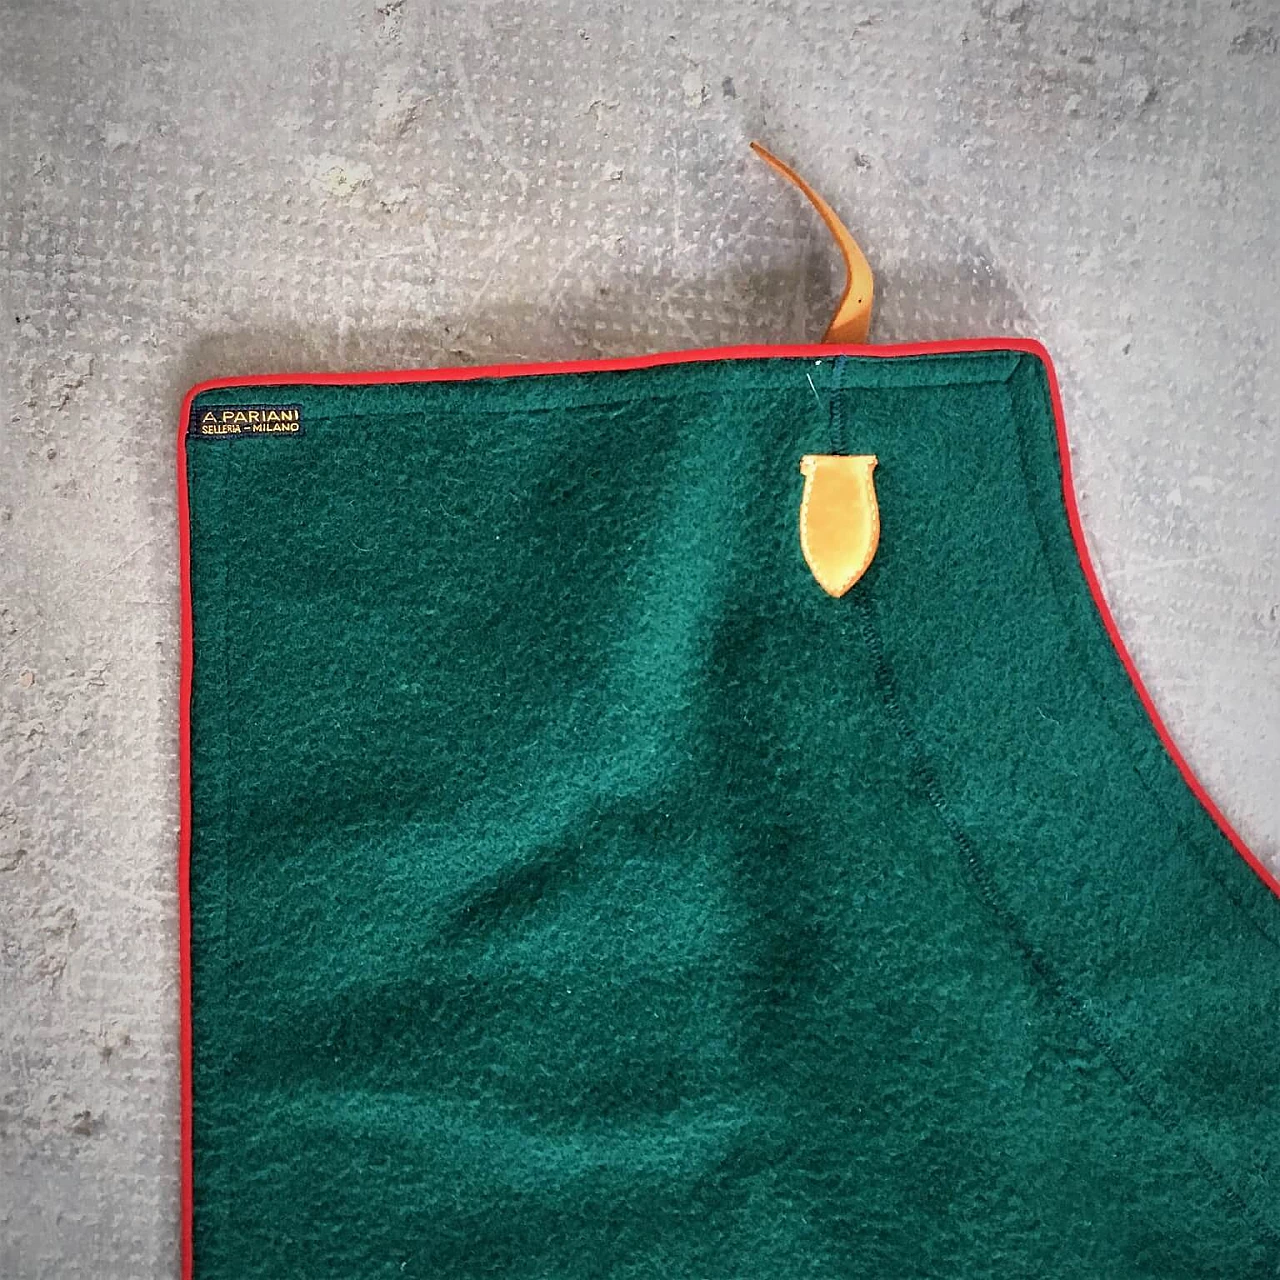 Coperta verde Selleria Pariani, realizzata a mano, pura lana vergine, profili rossi e cuoio, 1980 1071703